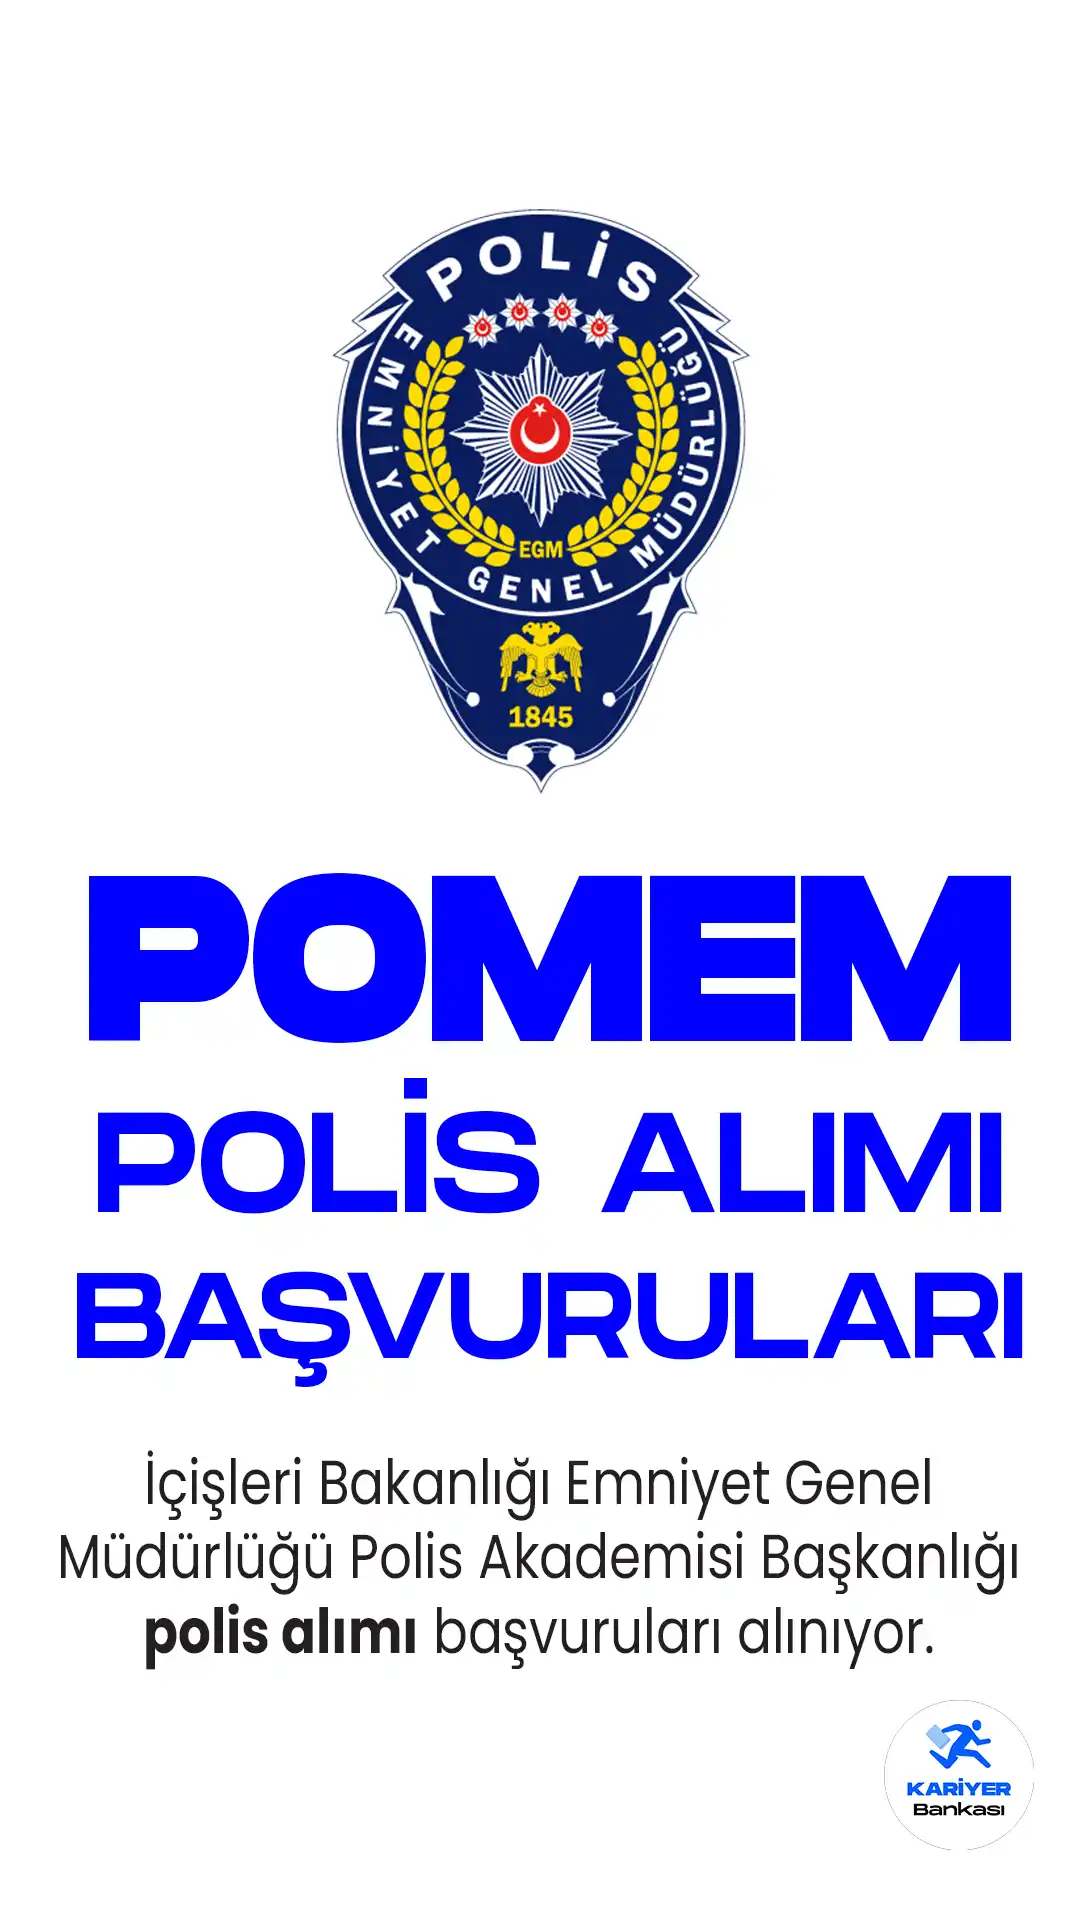 İçişleri Bakanlığı Emniyet Genel Müdürlüğü Polis Akademisi Başkanlığı 30. Dönem POMEM ile 10 bin 600 polis alımı başvuruları sürüyor.